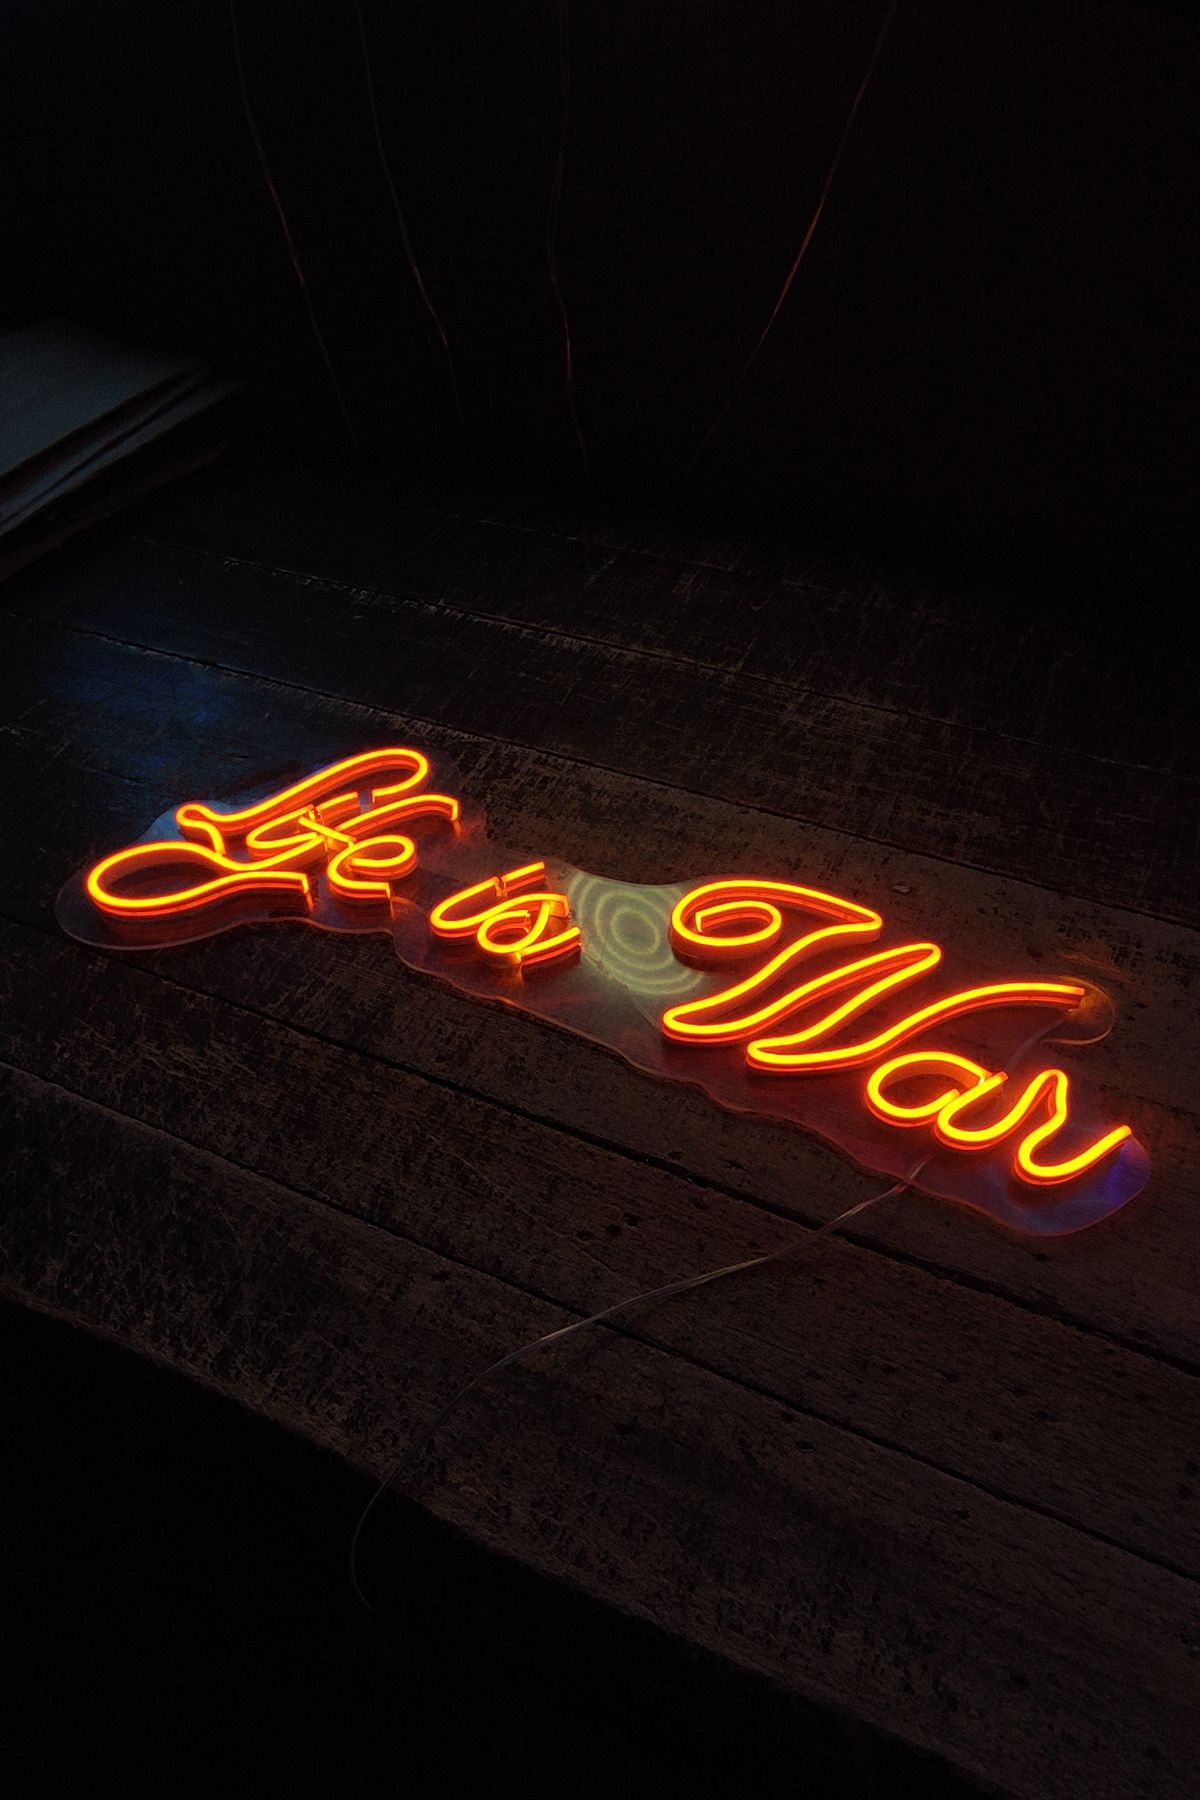 Işıklı Life Is War: Neon LED Tabela Duvar Dekorasyon Ürünü 